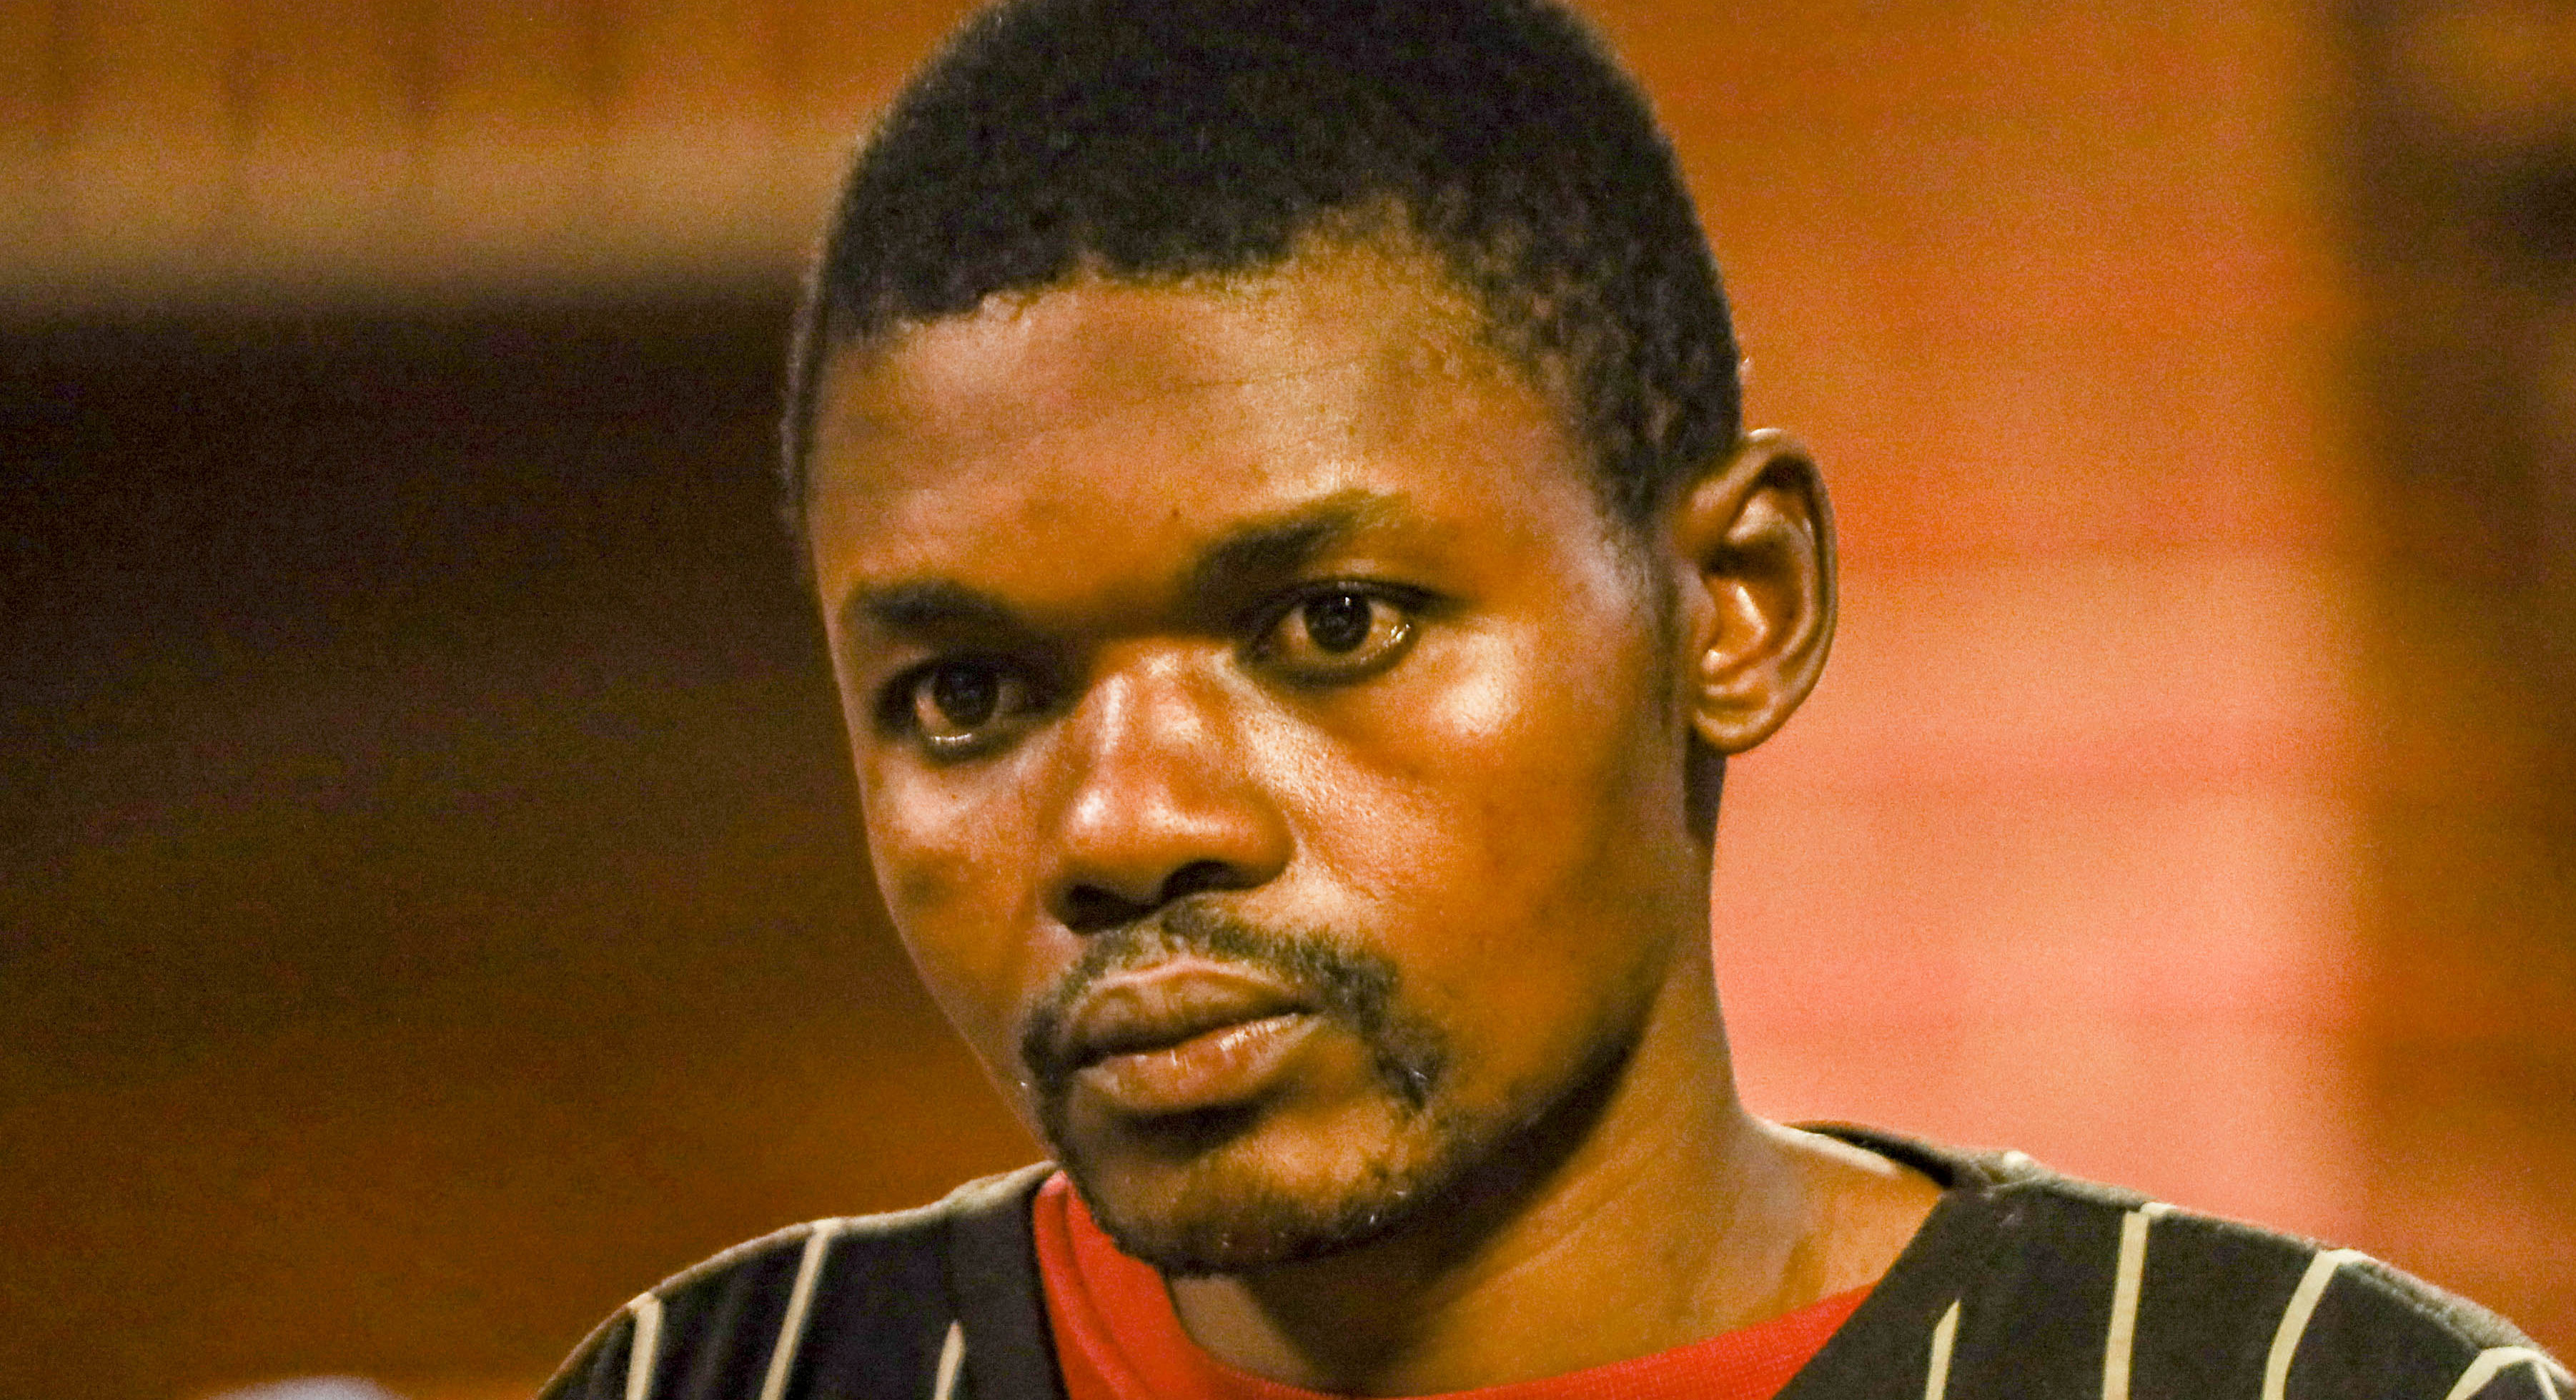 Murder: Ntokozo Khulekani Zikhali